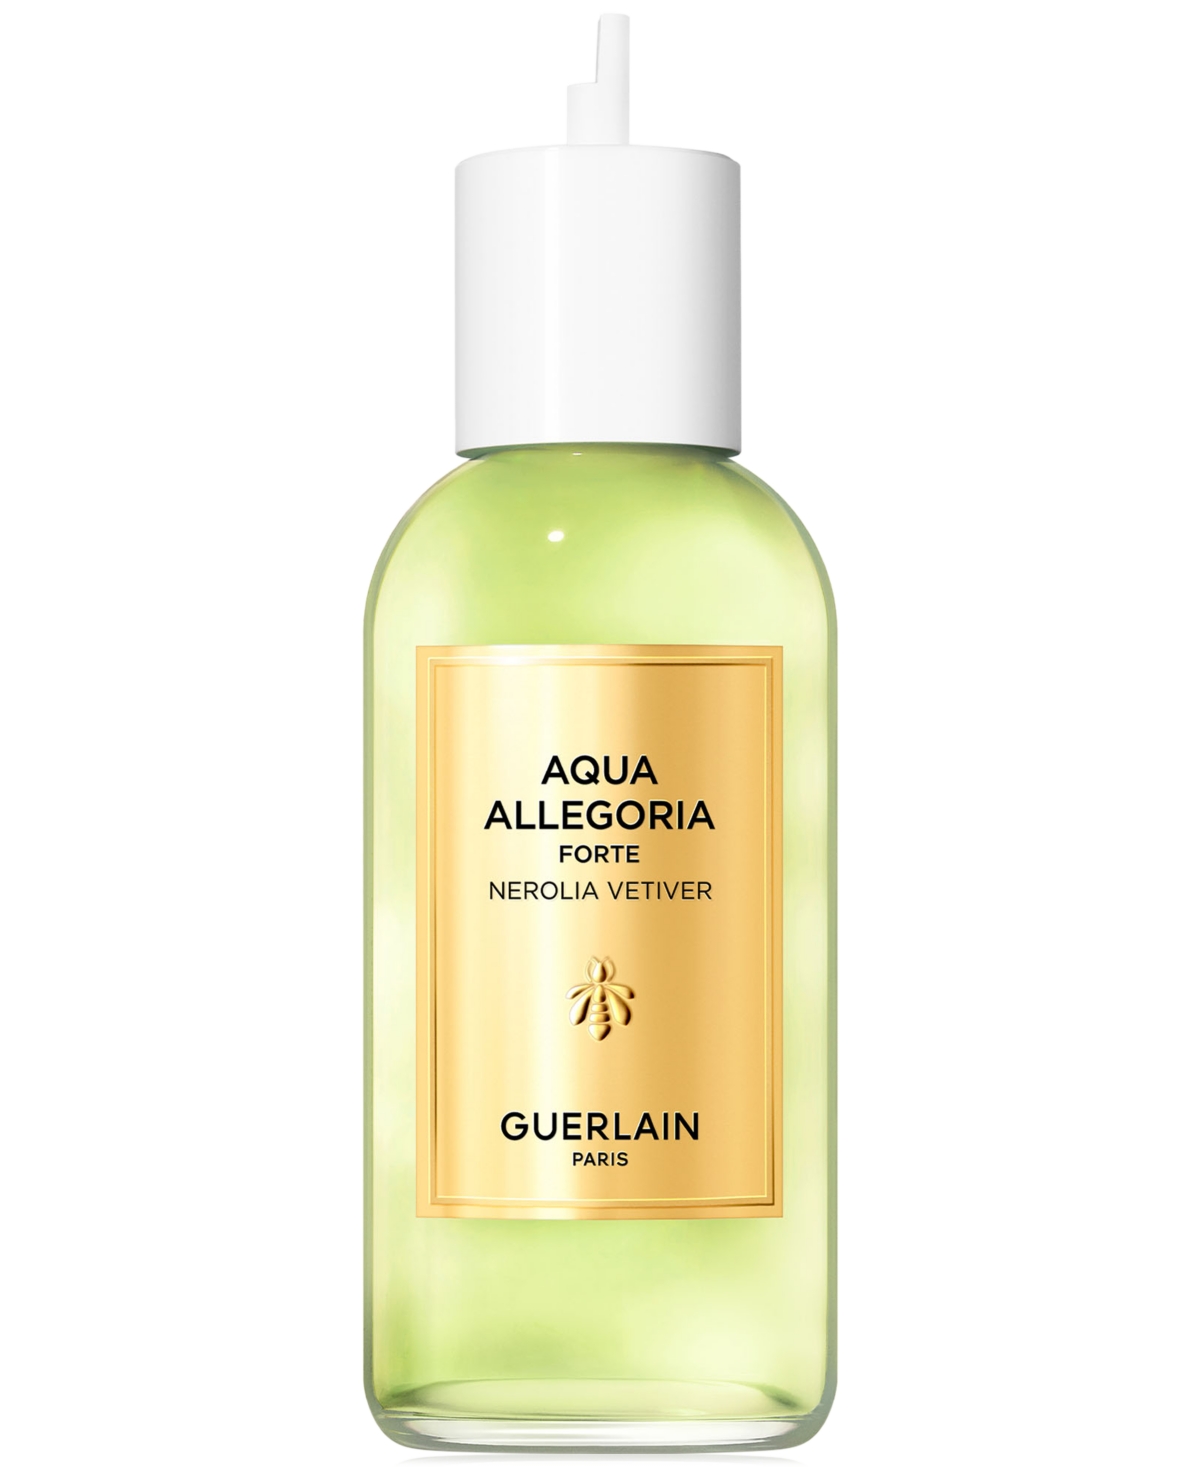 Guerlain Aqua Allegoria Forte Nerolia Vetiver Eau De Parfum Refill, 6.7 Oz.